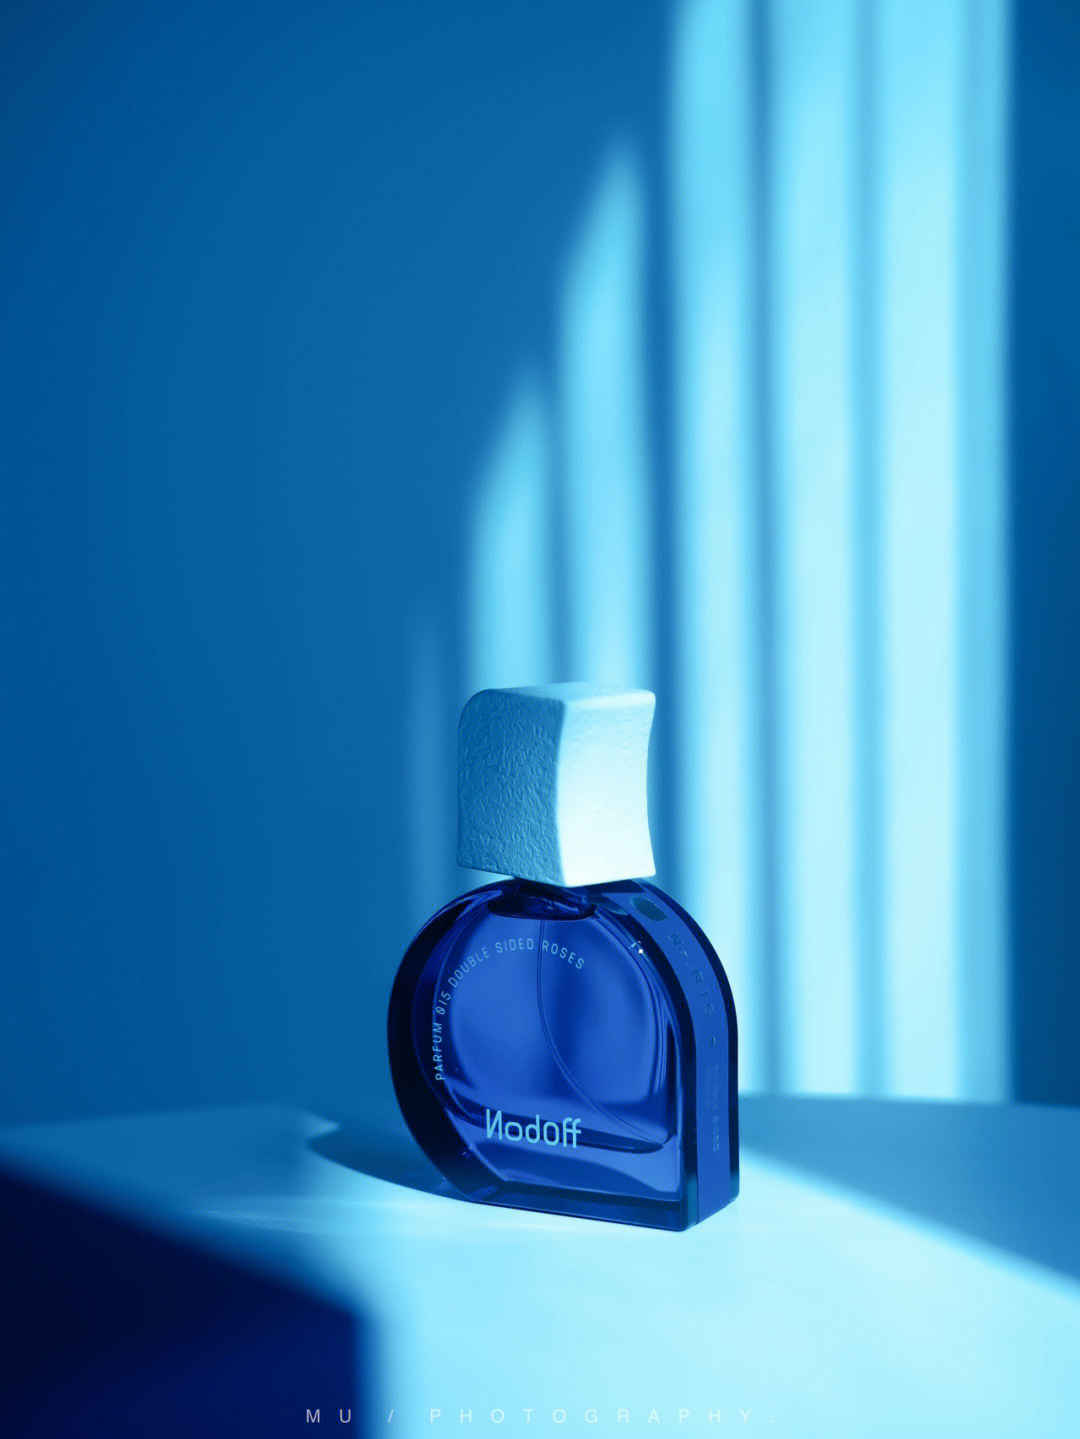 蓝色圆瓶子扁扁的香水图片